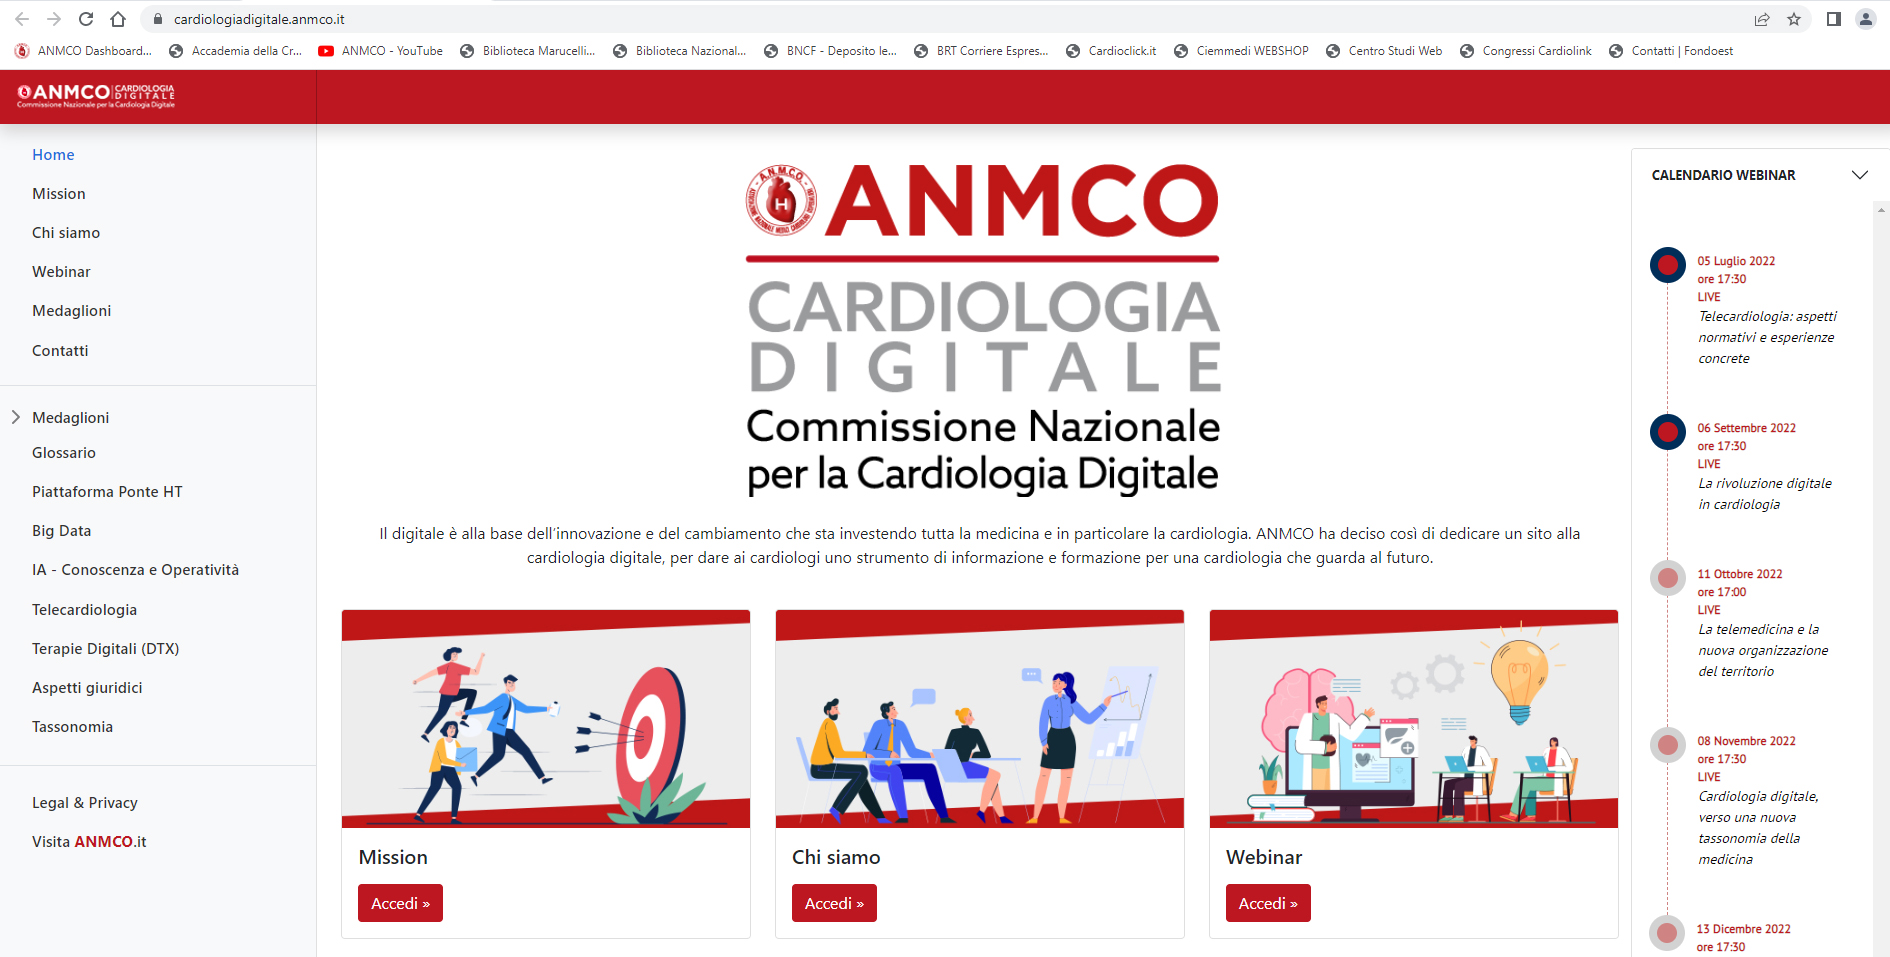 Il Sito ANMCO dedicato alla Cardiologia Digitale